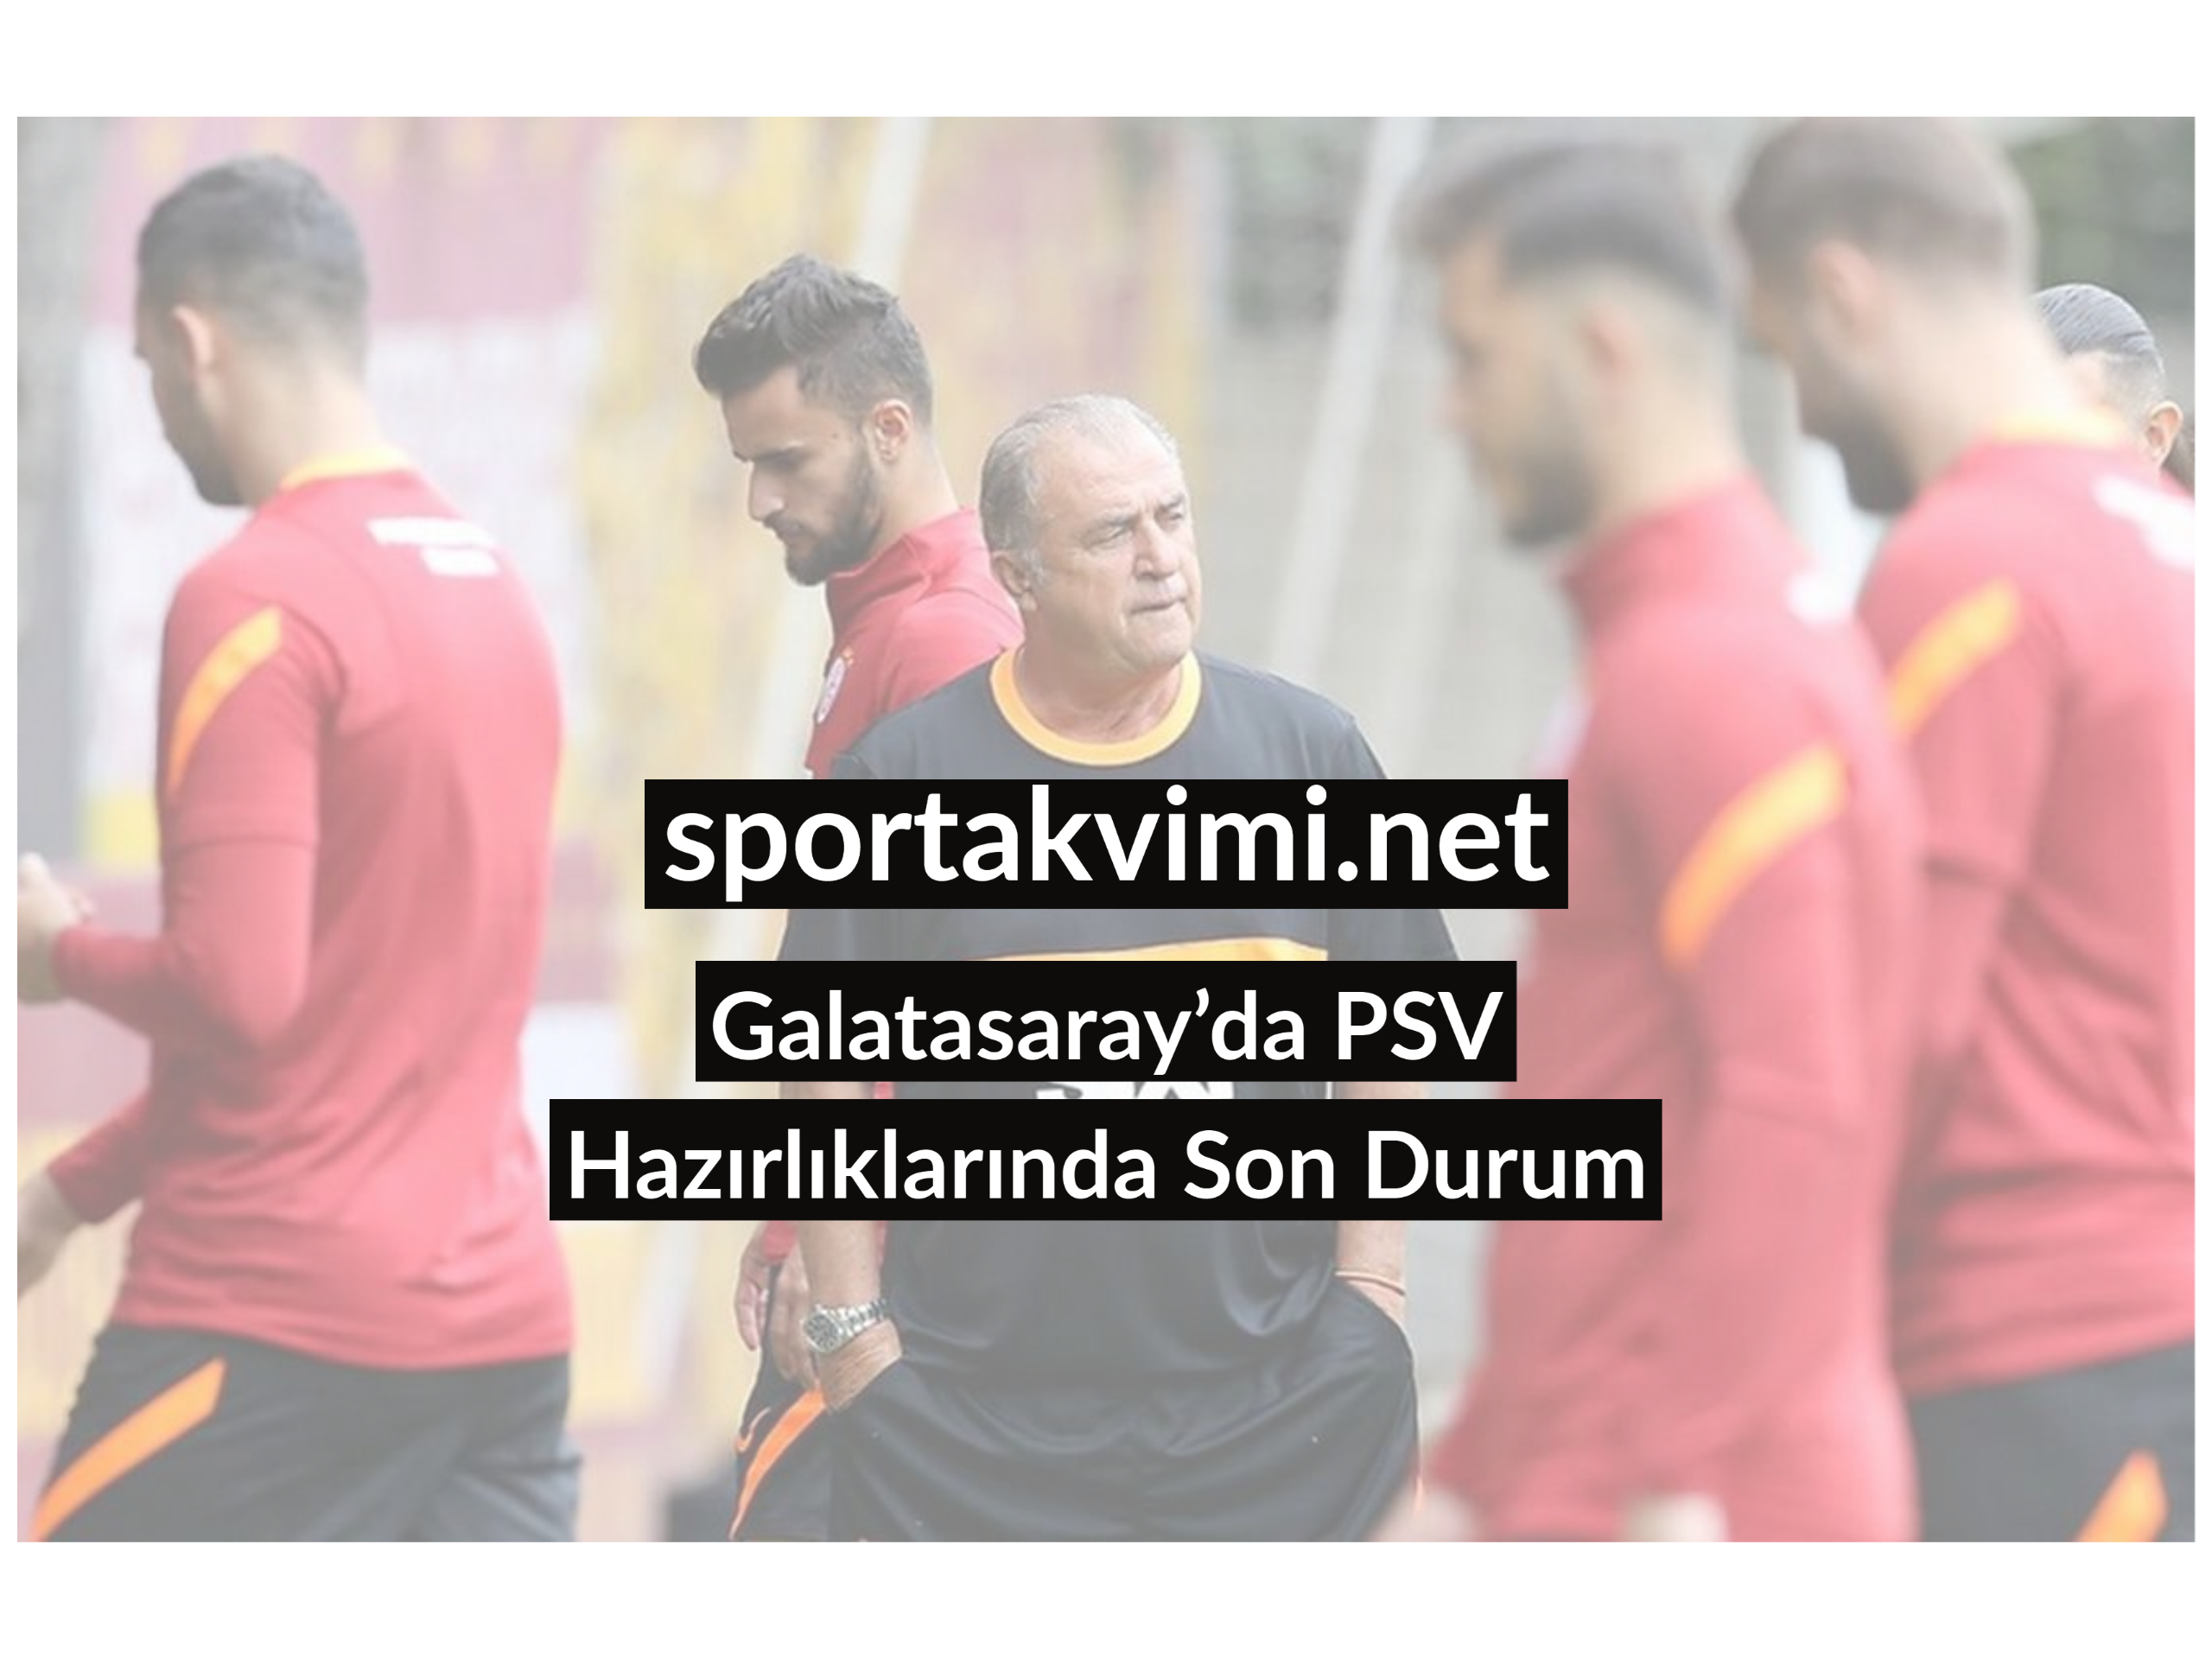 Galatasaray’da PSV Hazırlıklarında Son Durum